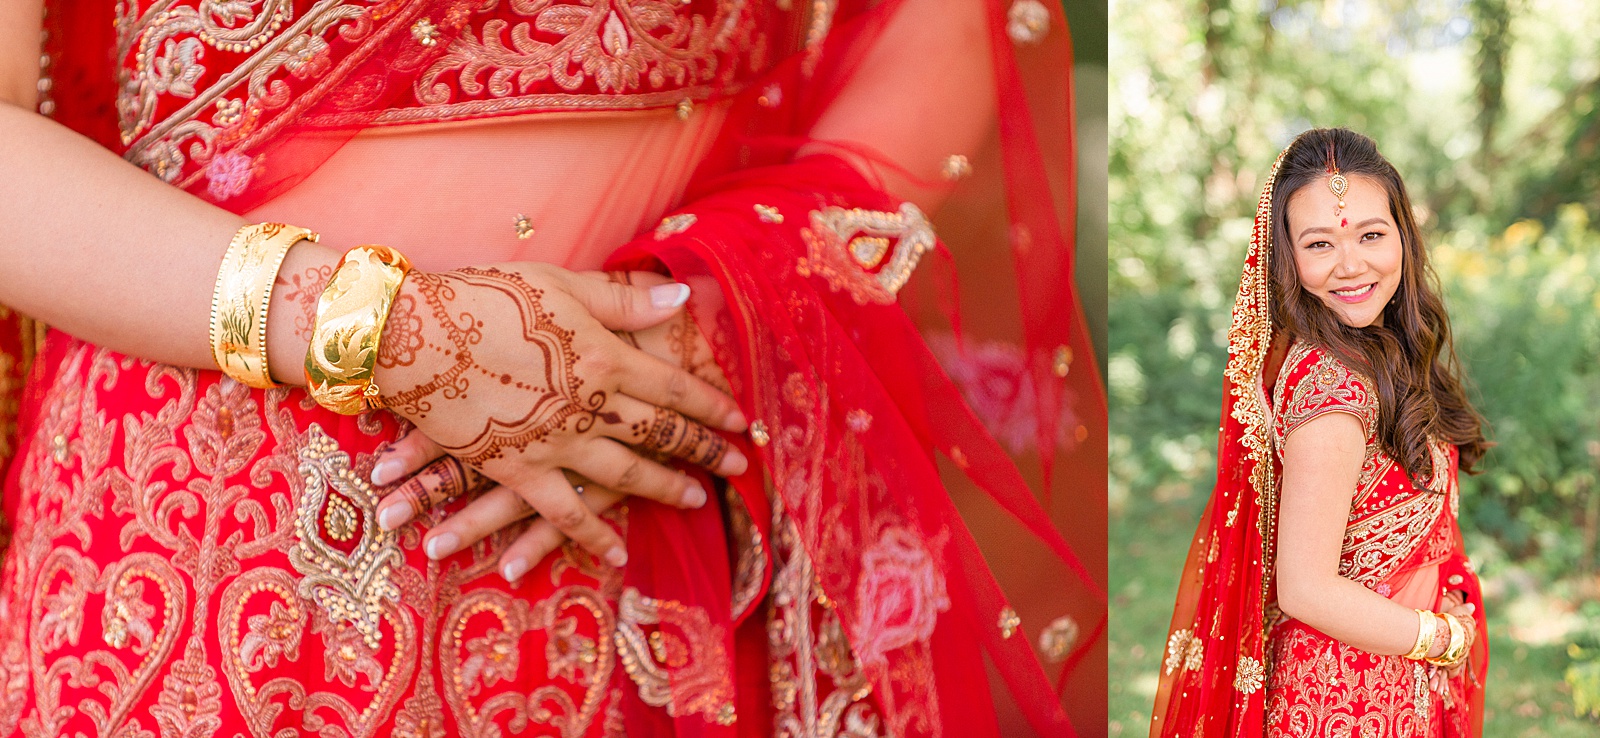 Indian bride details